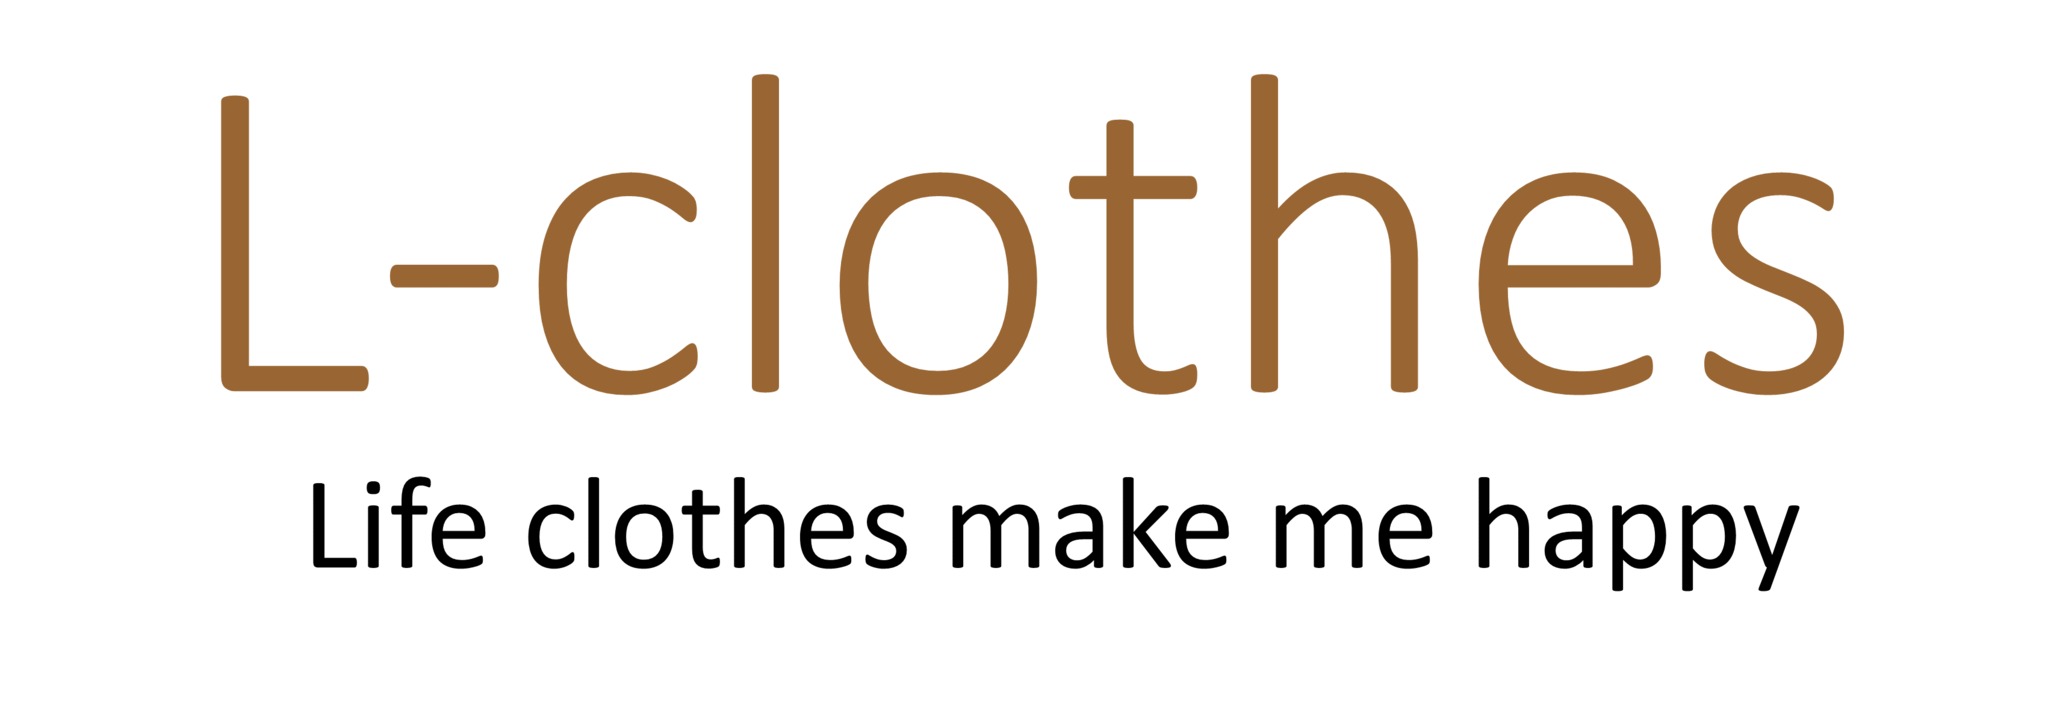 L-clothes